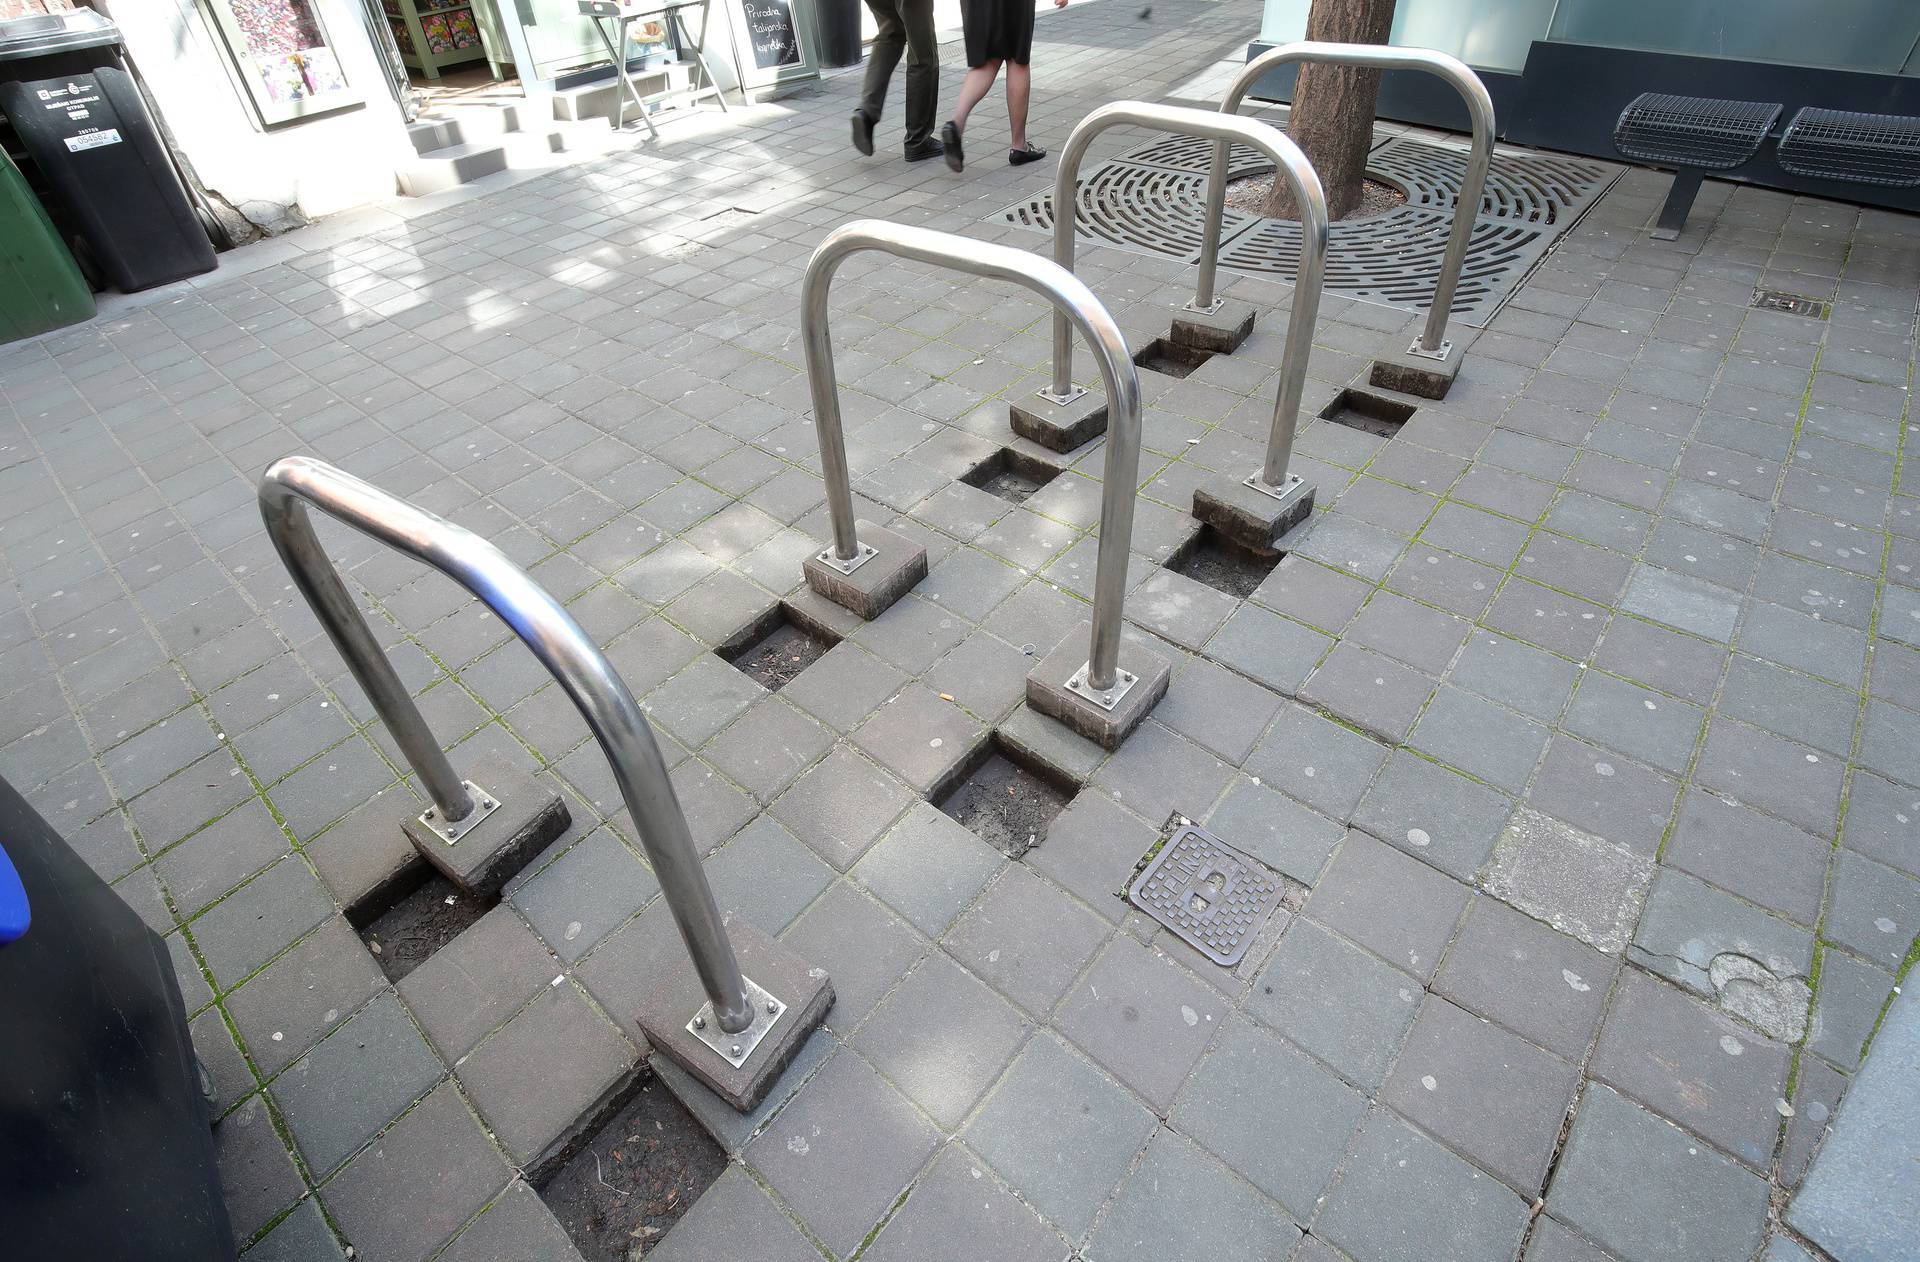 Biciklisti, oprez! U Zagrebu postavljene 'klamerice' koje bez po' muke iščupaju i odnesu...